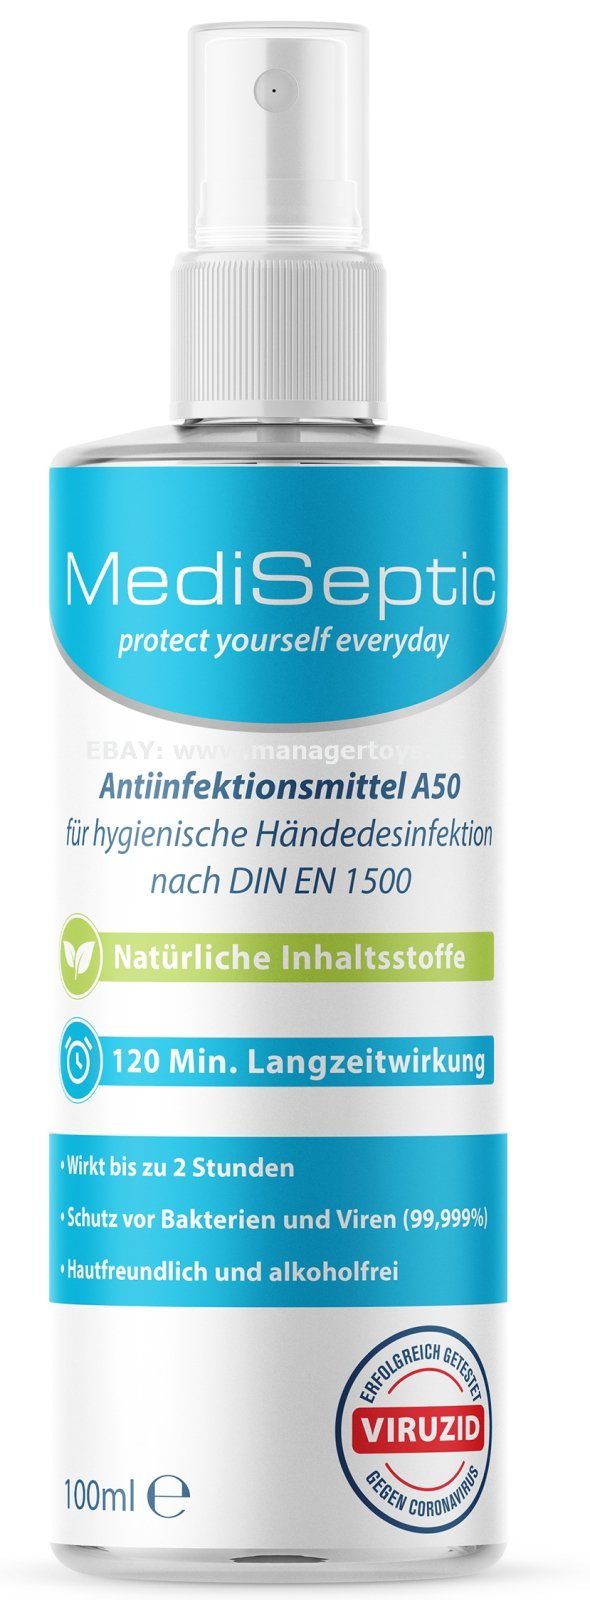 MediSeptic Handcreme MediSeptic Antiinfektionsmittel 99,9% Hand 2 Hände zusätzlich h Desinfektion Desinfektion 100 zur Schutz ml, Anti-Infektion